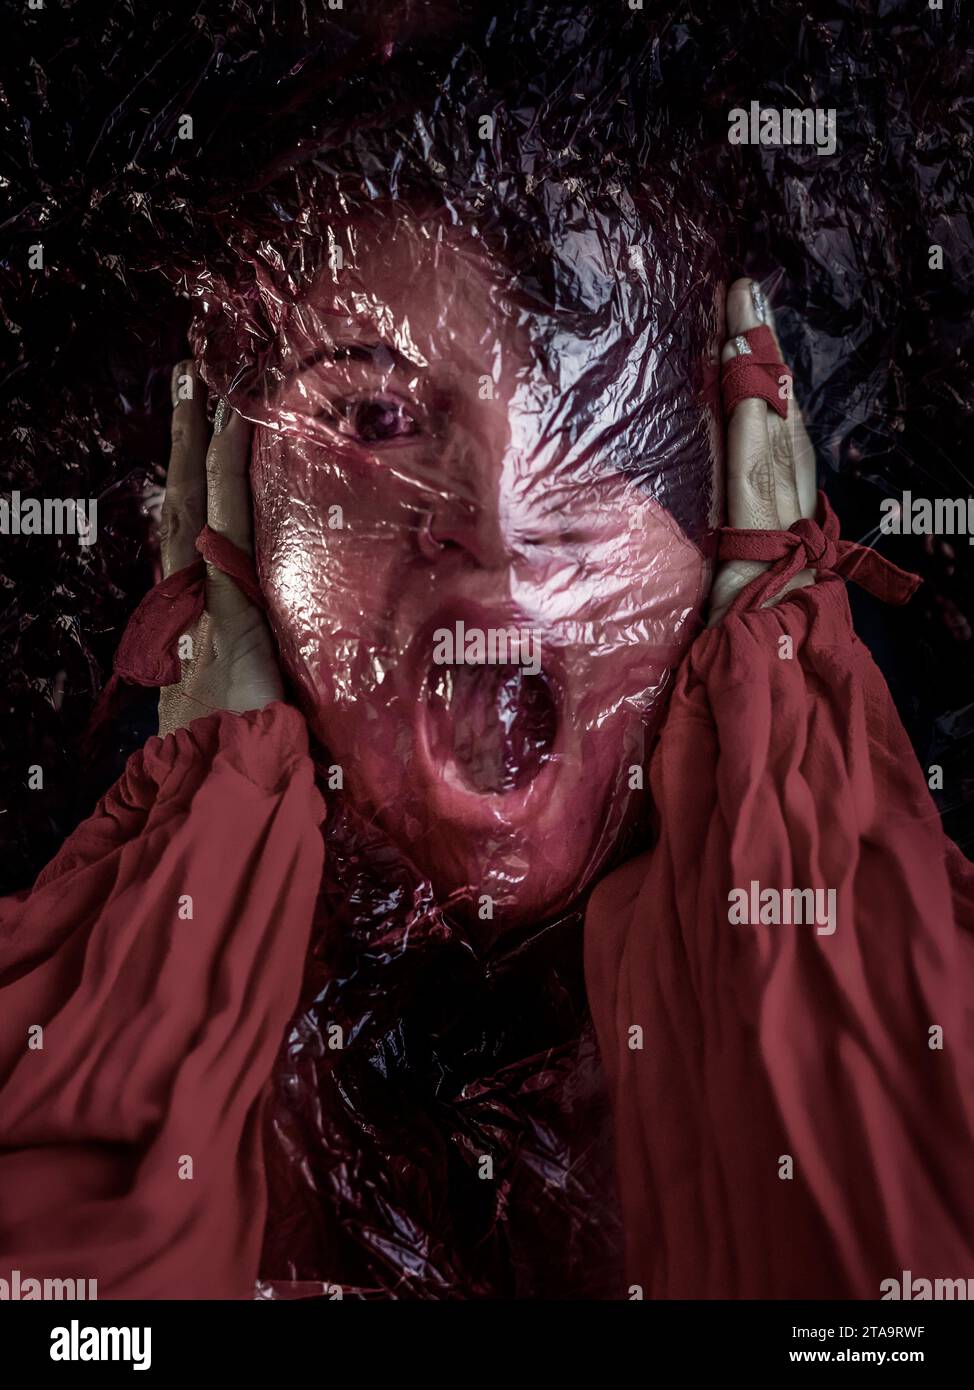 Frau mit einem roten durchsichtigen Beutel im Gesicht, die Hände drücken sich gegen die Ohren, der Mund ist offen und zeigt sich in Not und Verzweiflung. Illustrati Stockfoto